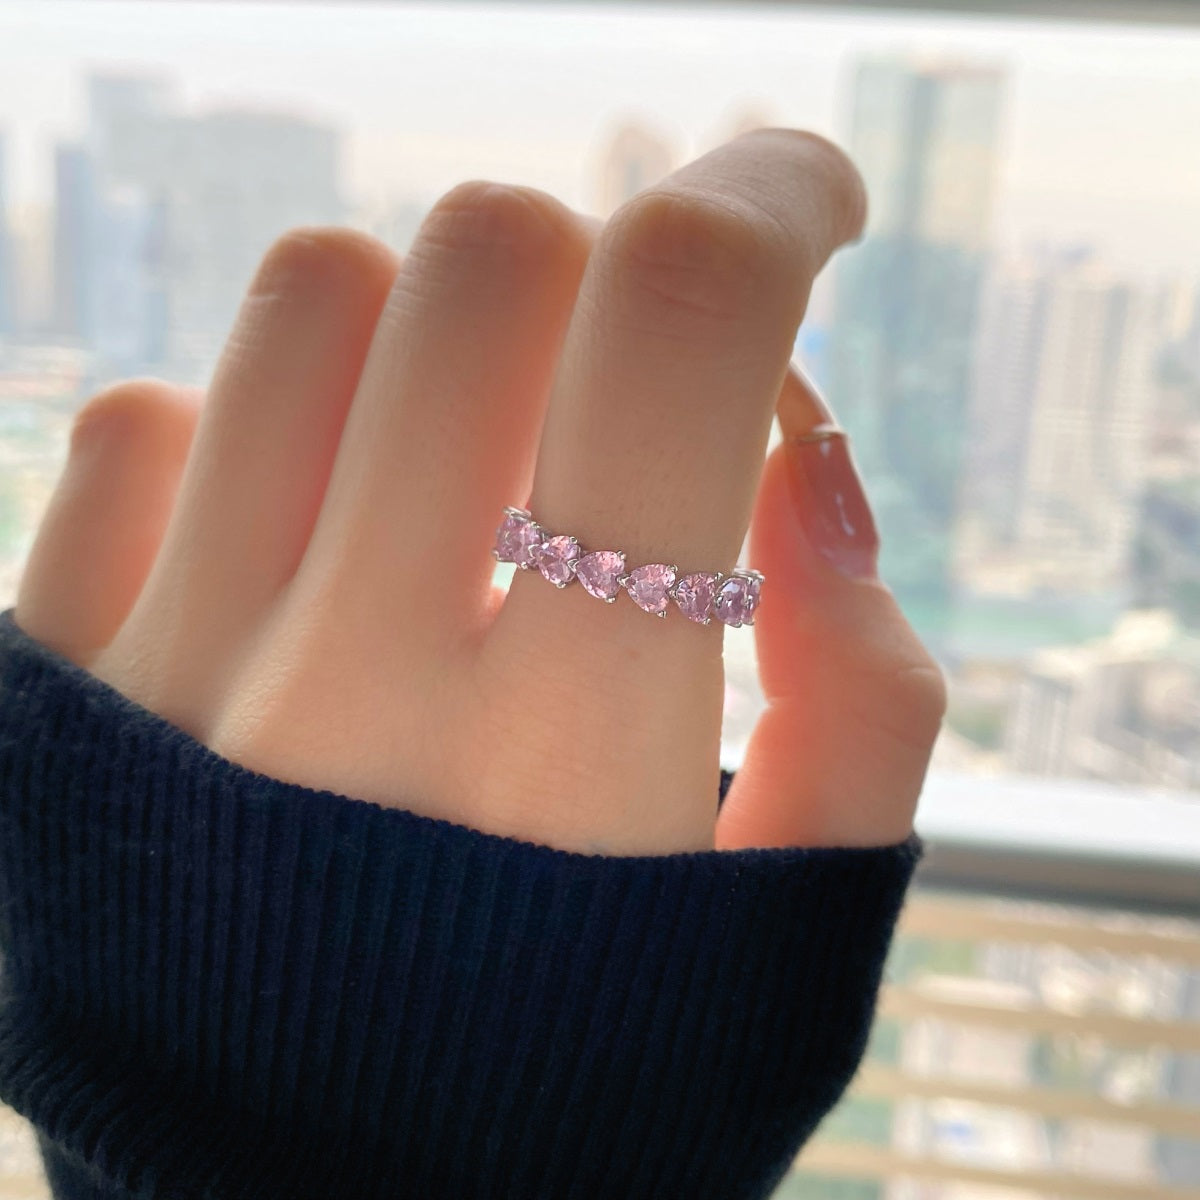 Silber Ring mit pinke Diamanten bestückt - Arabisco